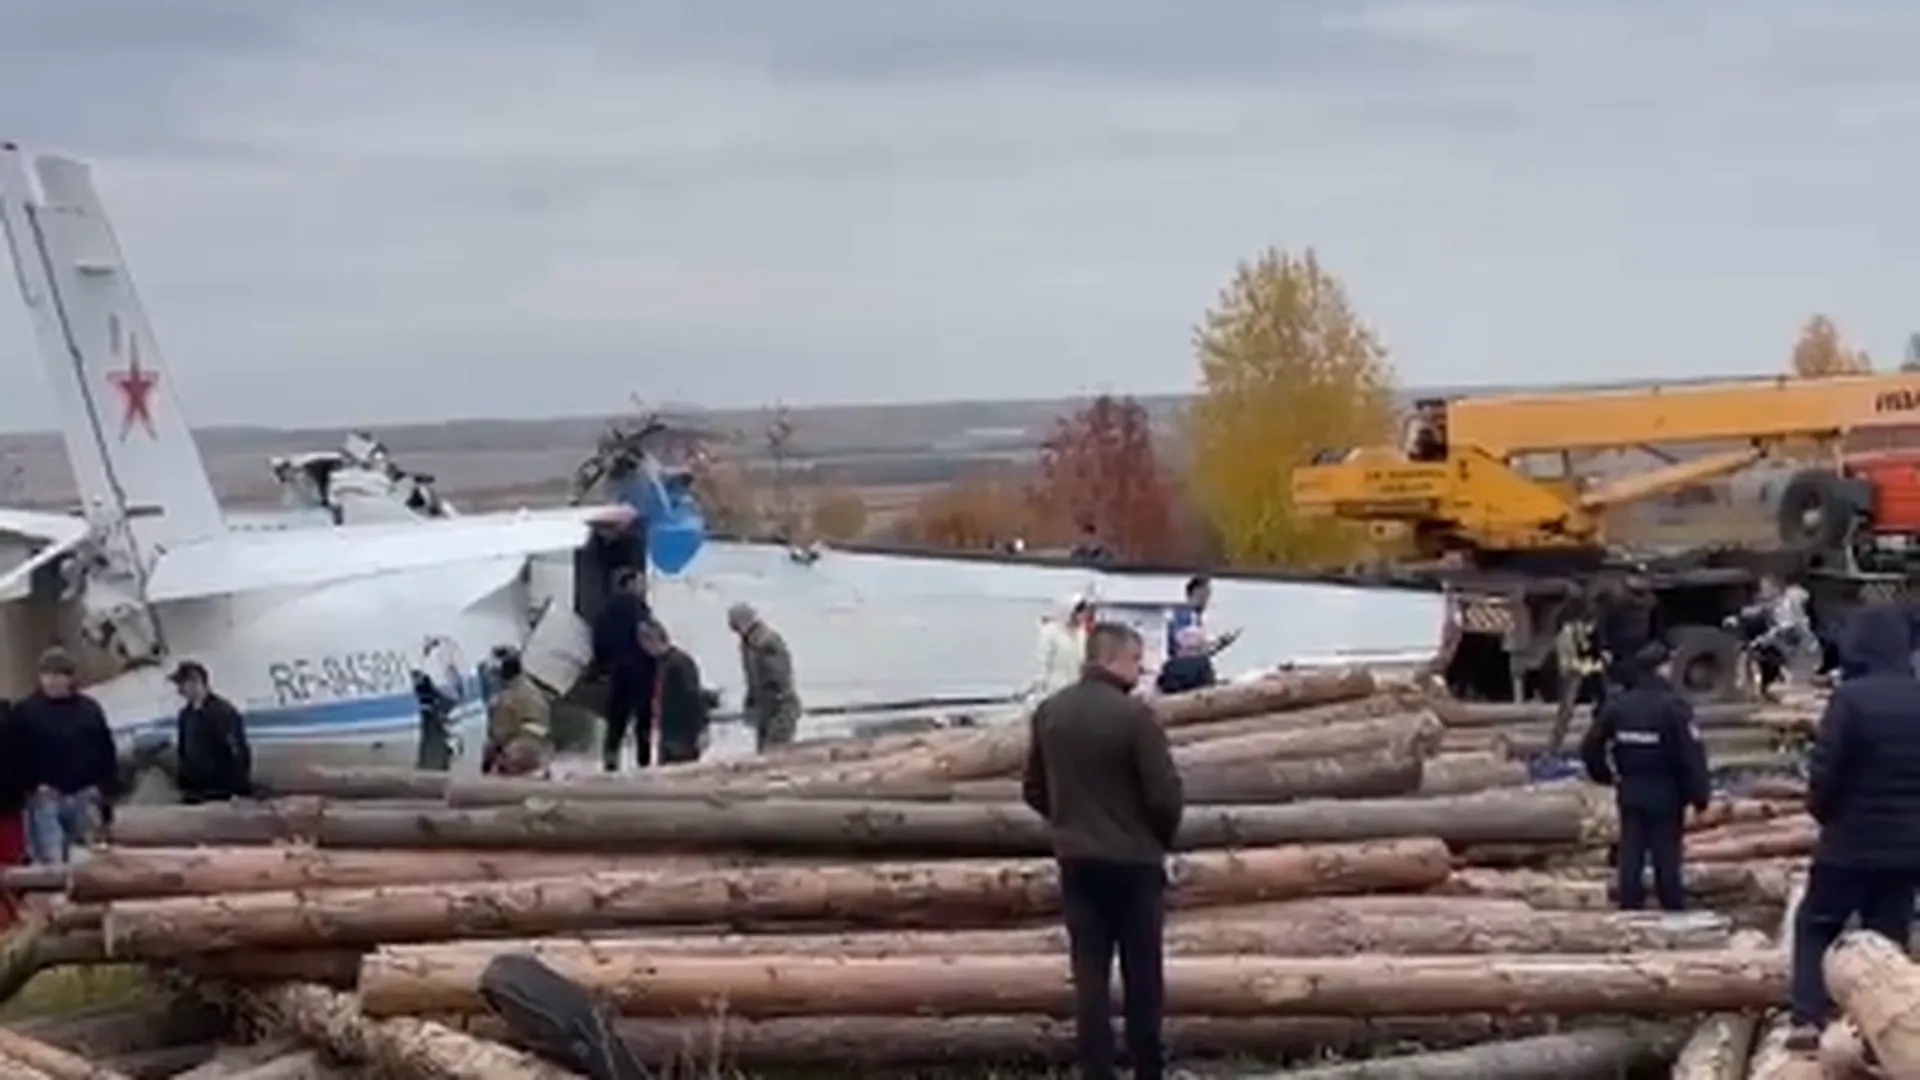 Спасатели сообщили о 7 выживших при крушении самолета L-410 в Татарстане